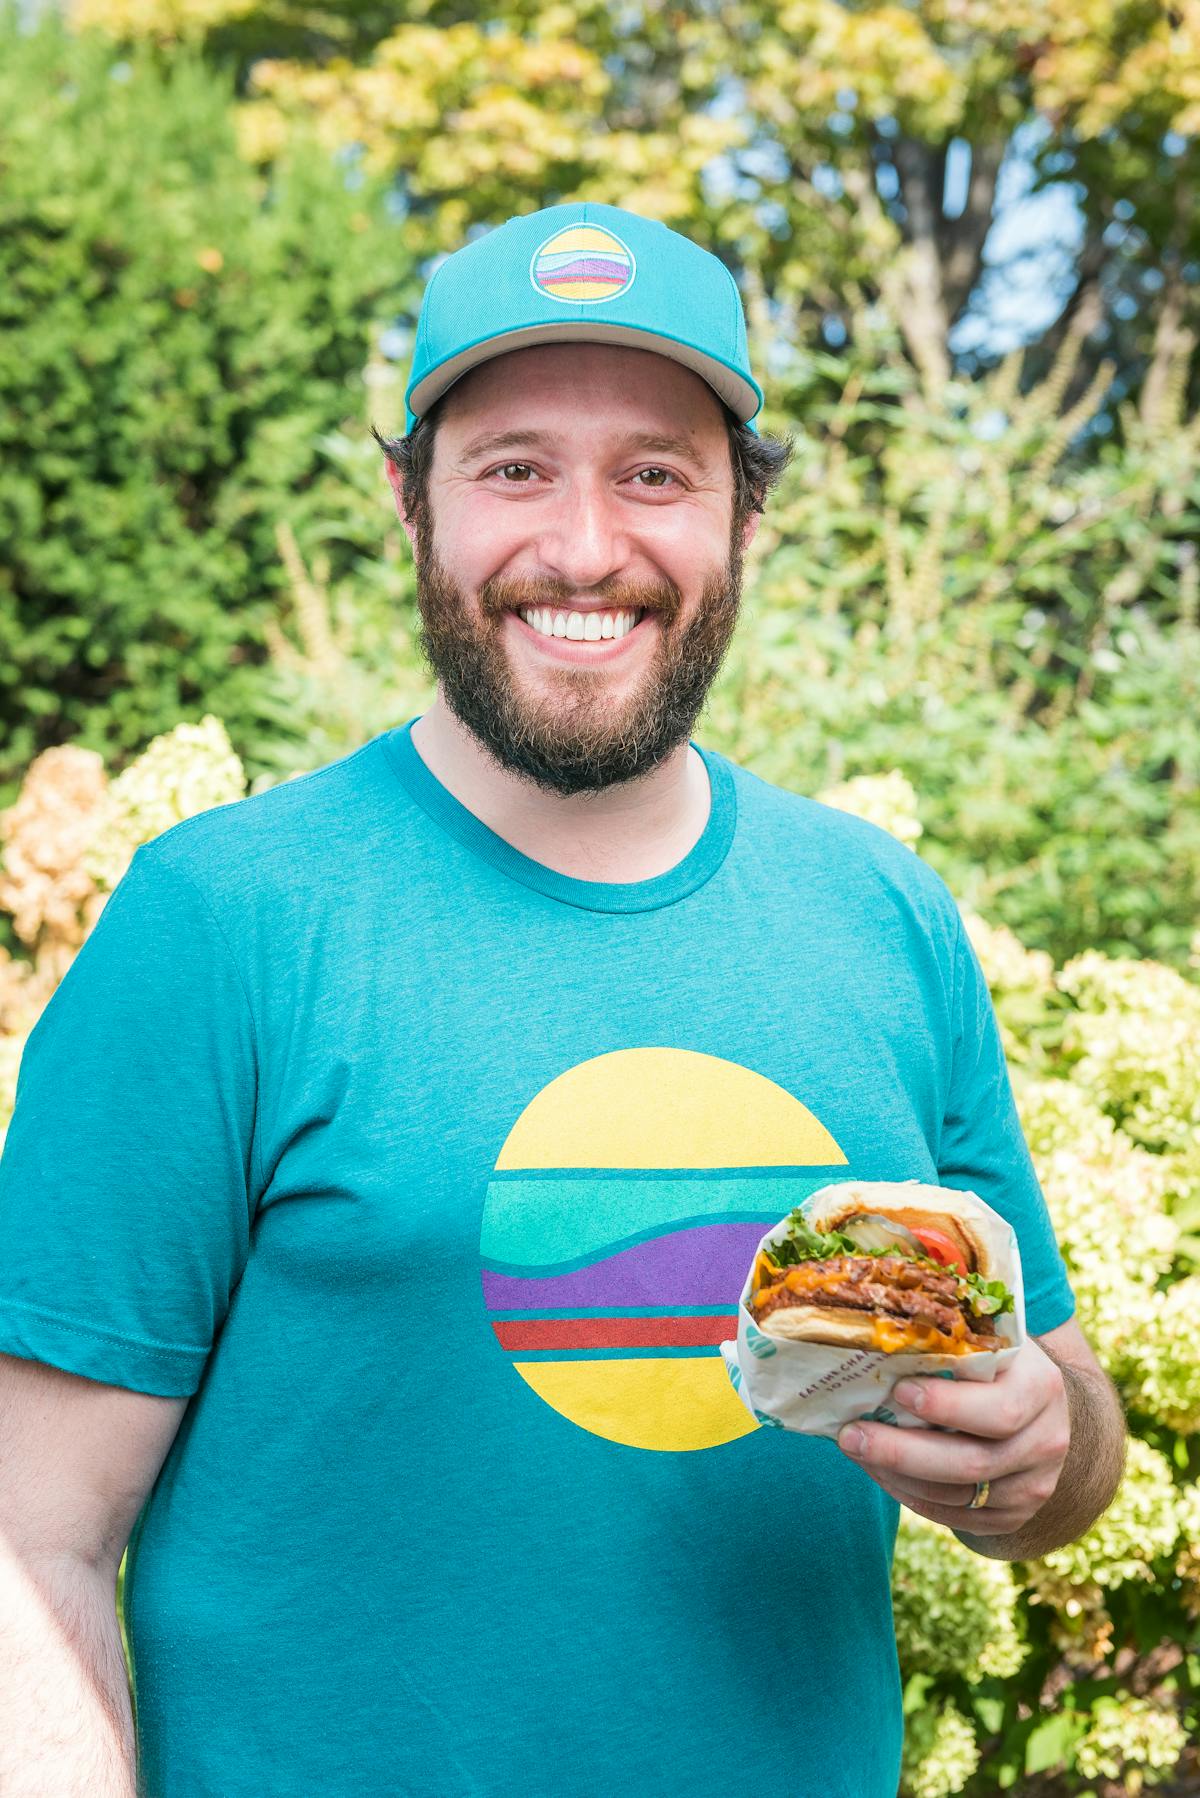 a man in a blue shirt holding a sandwich